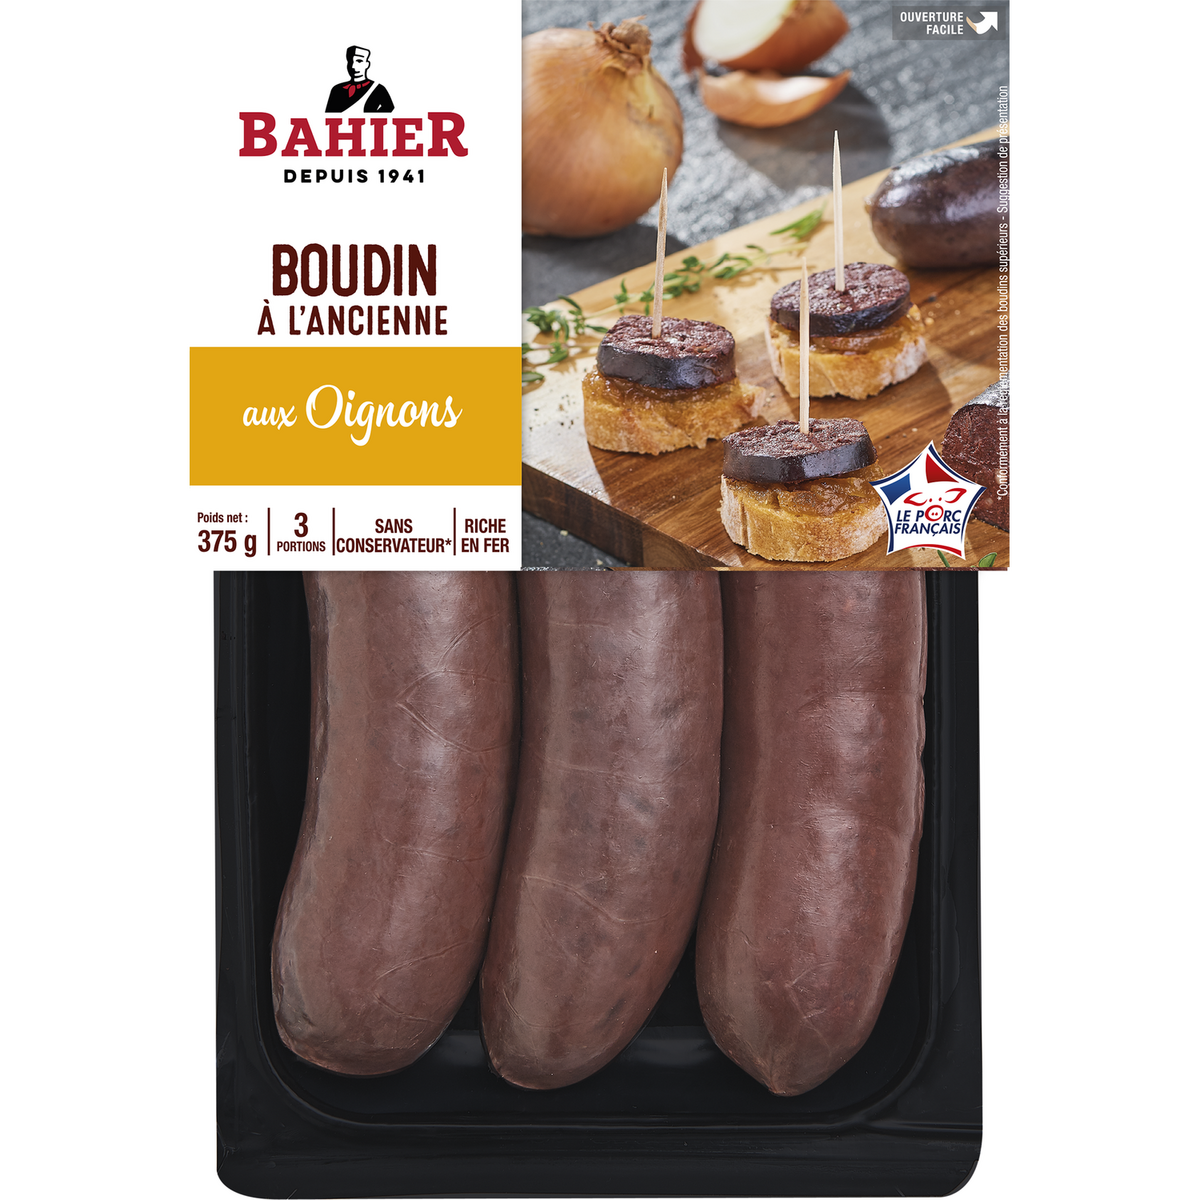 Bahier Boudins Noirs Aux Oignons Pi Ces G Pas Cher Auchan Fr